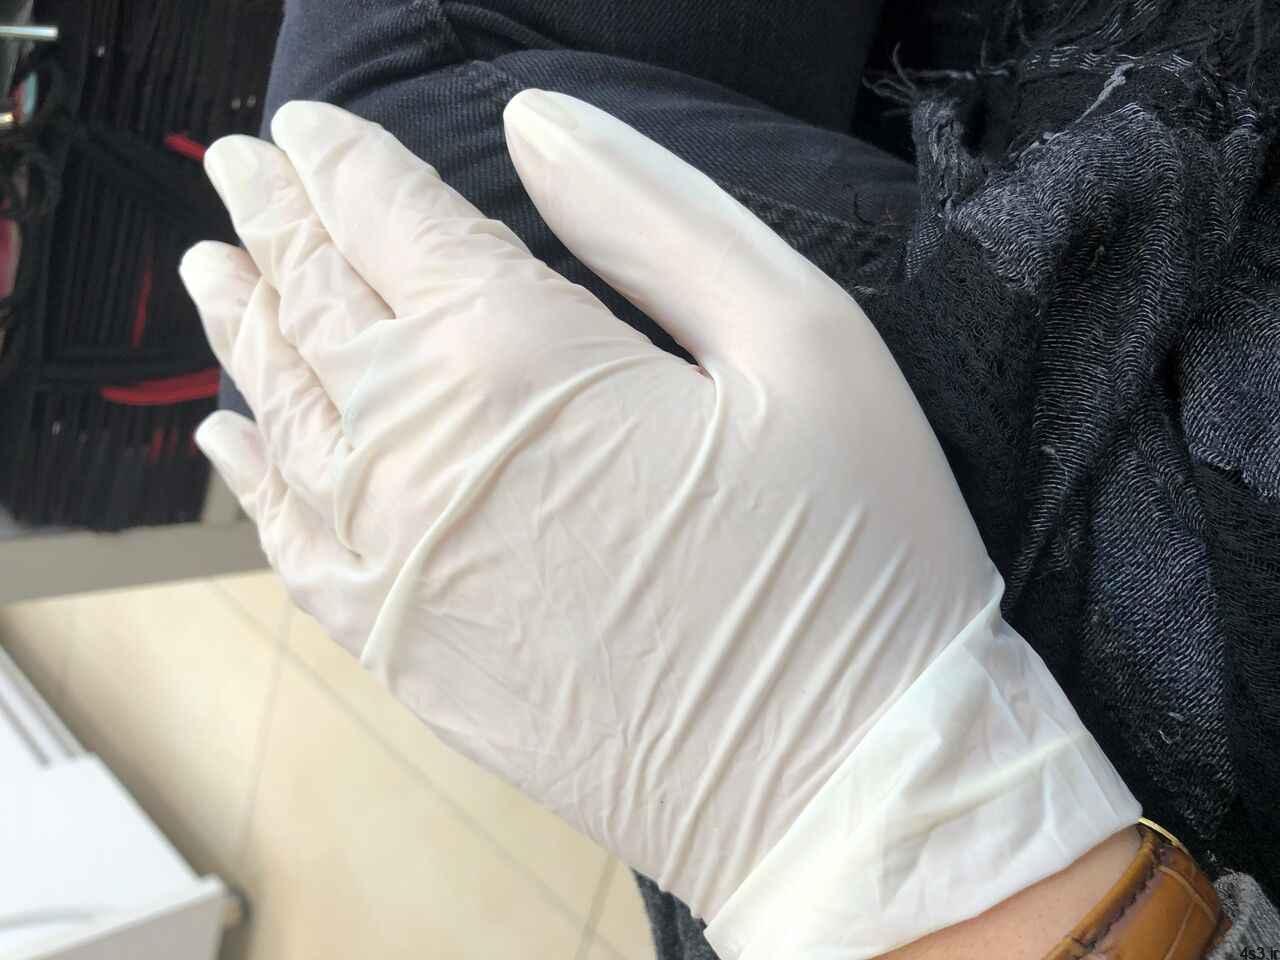 خبرهای پزشکی : زنگ خطر رهاسازی دستکش و ماسک آلوده به ویروس کرونا در فضاهای عمومی